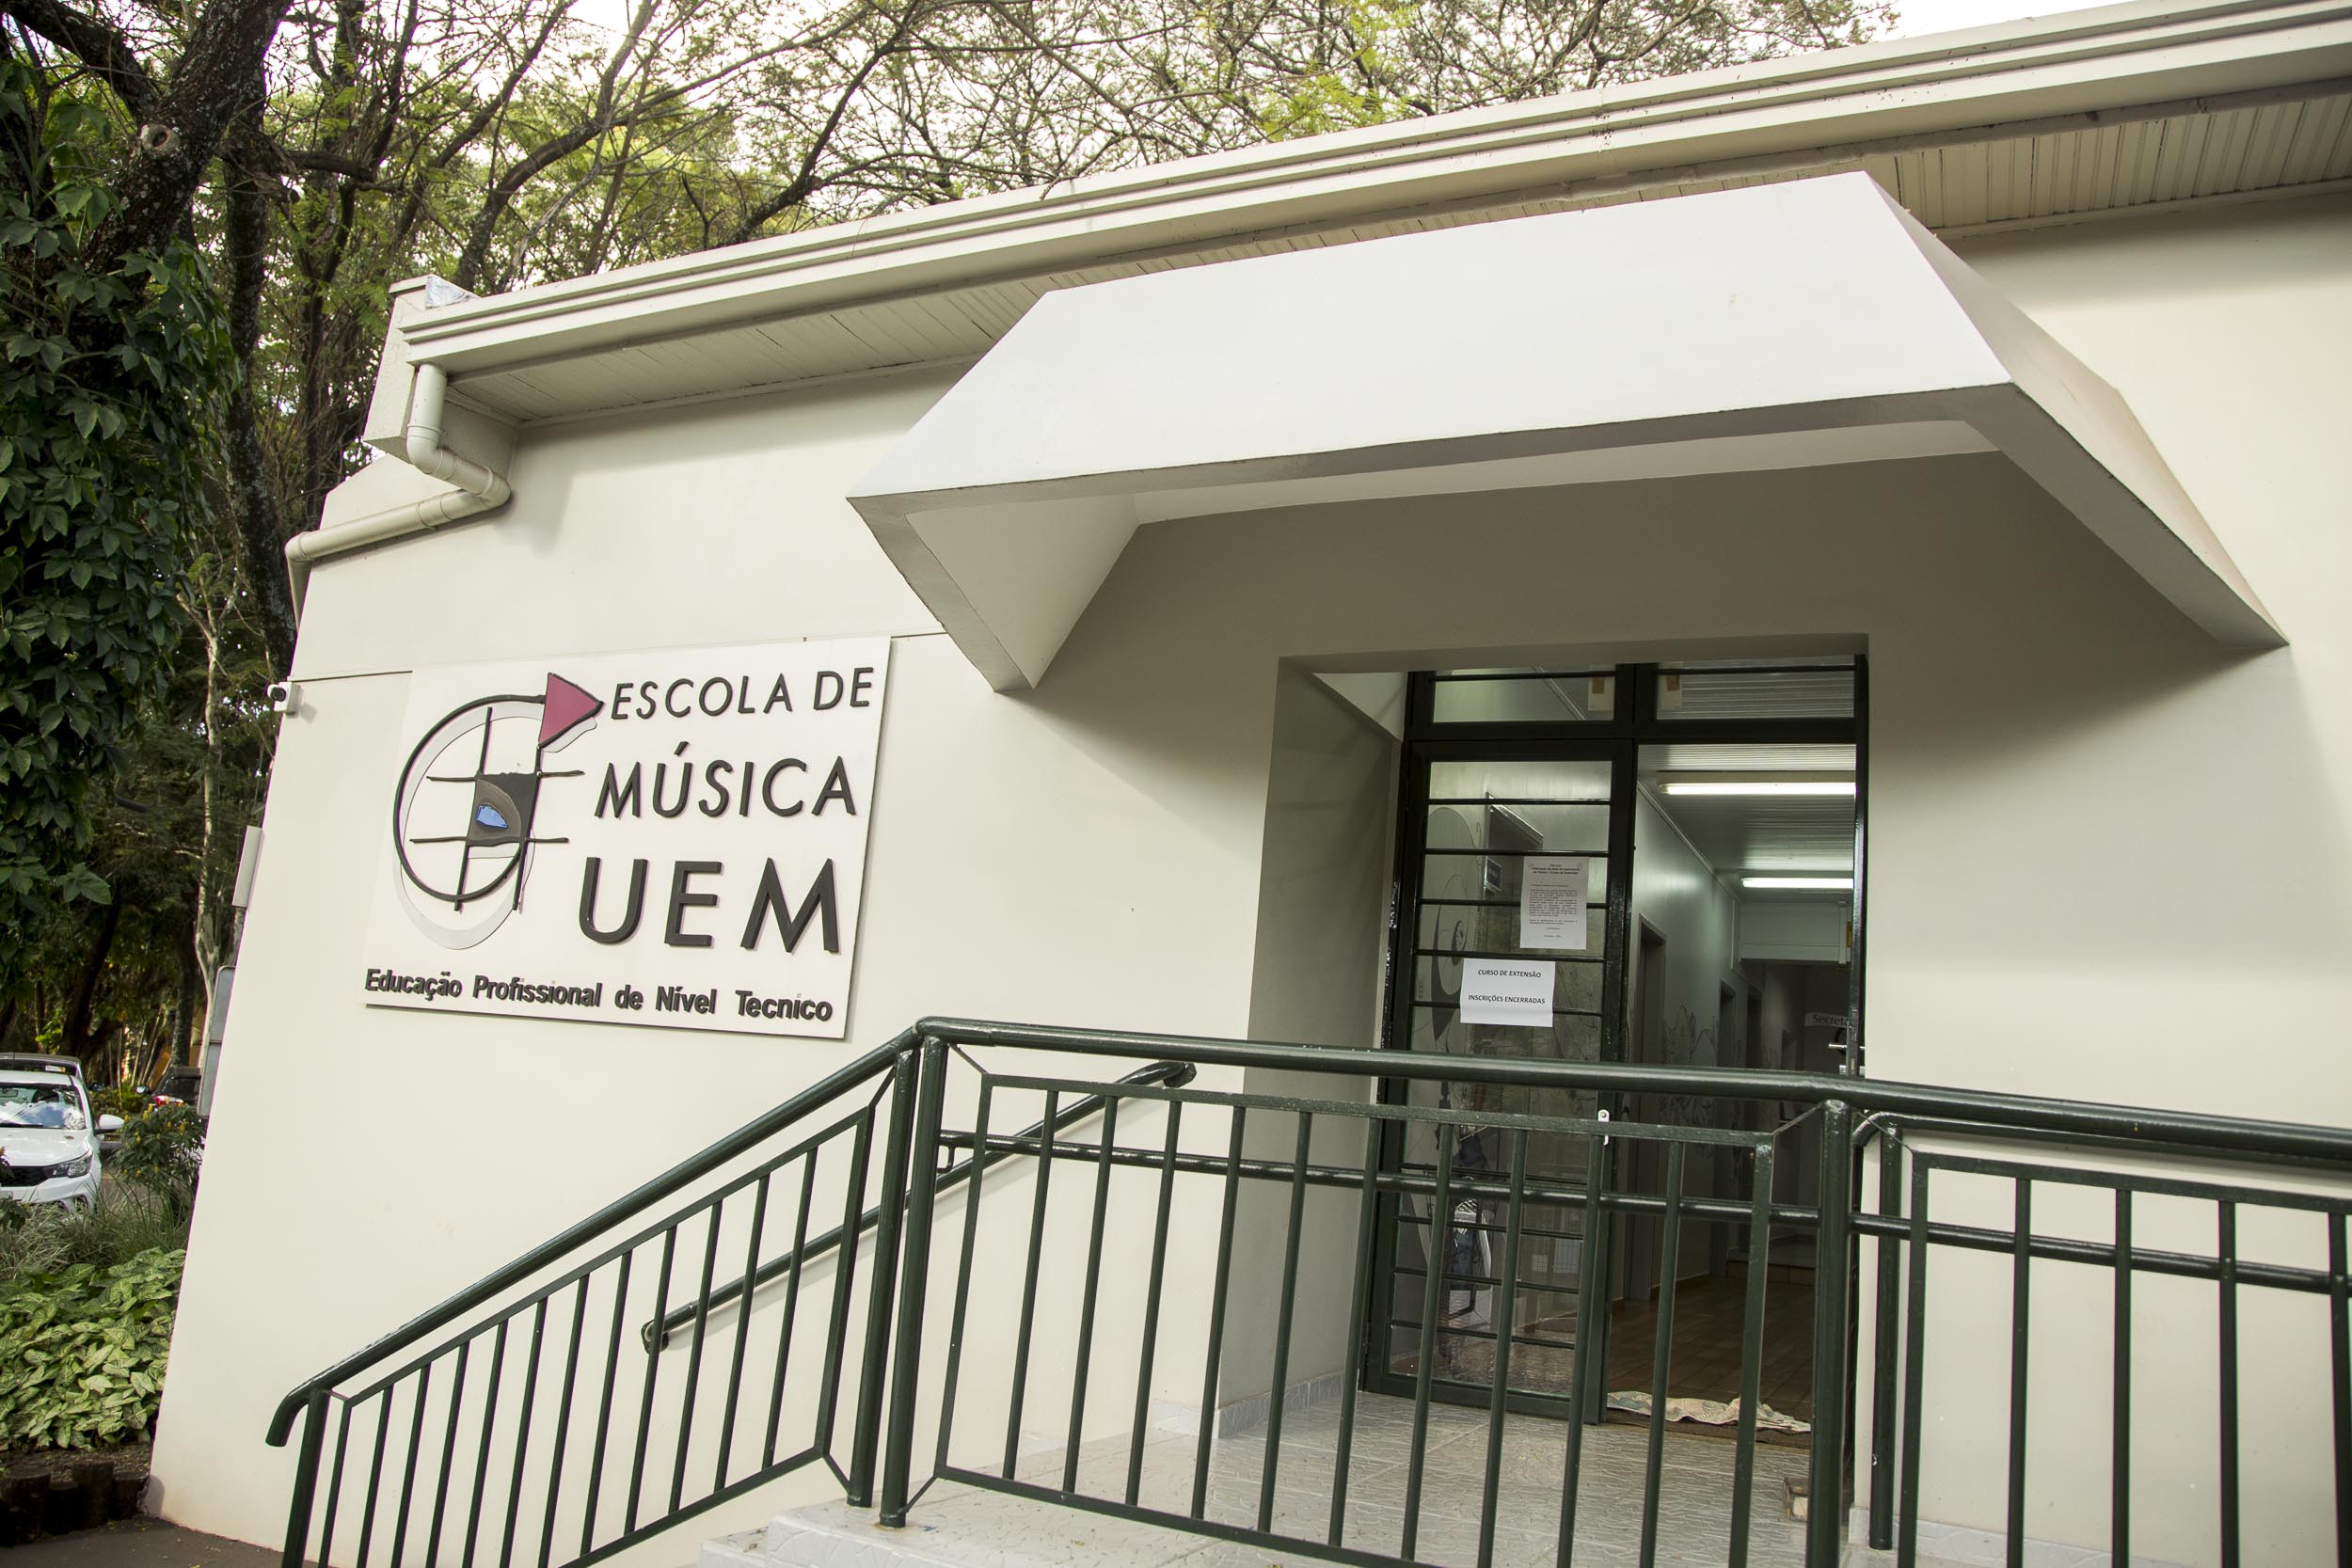 2019 03 26 Escola de Musica UEM MG 4186